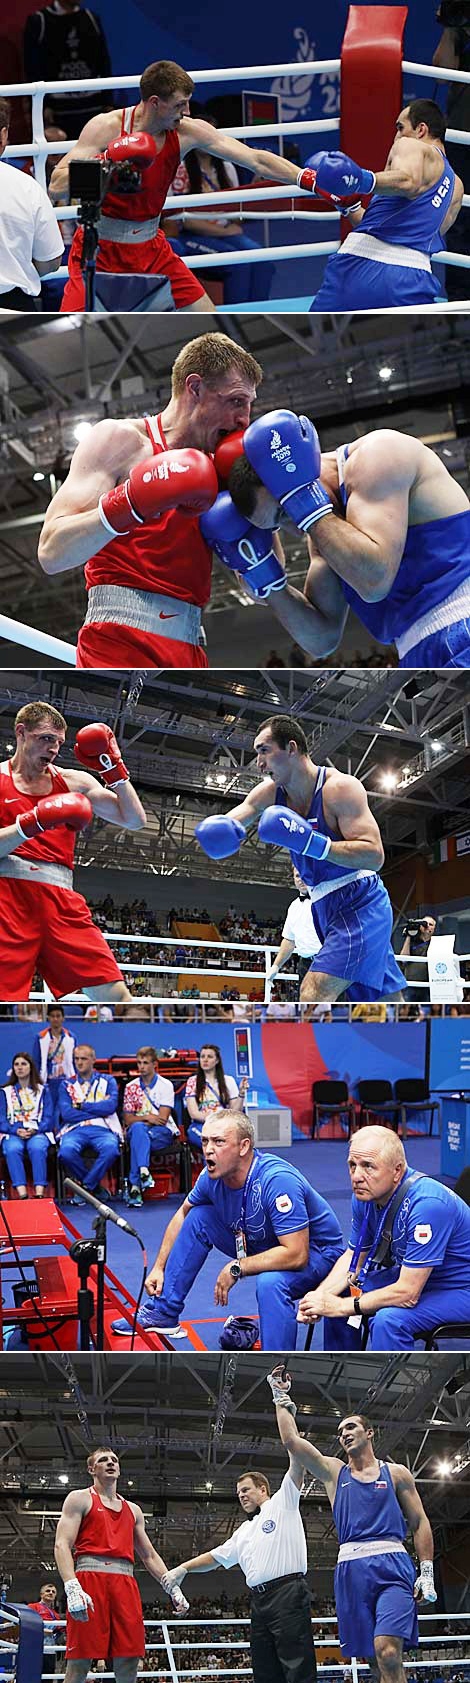 白罗斯拳击手弗拉基斯拉夫•斯米扬格利科夫获得第二届欧运会银牌